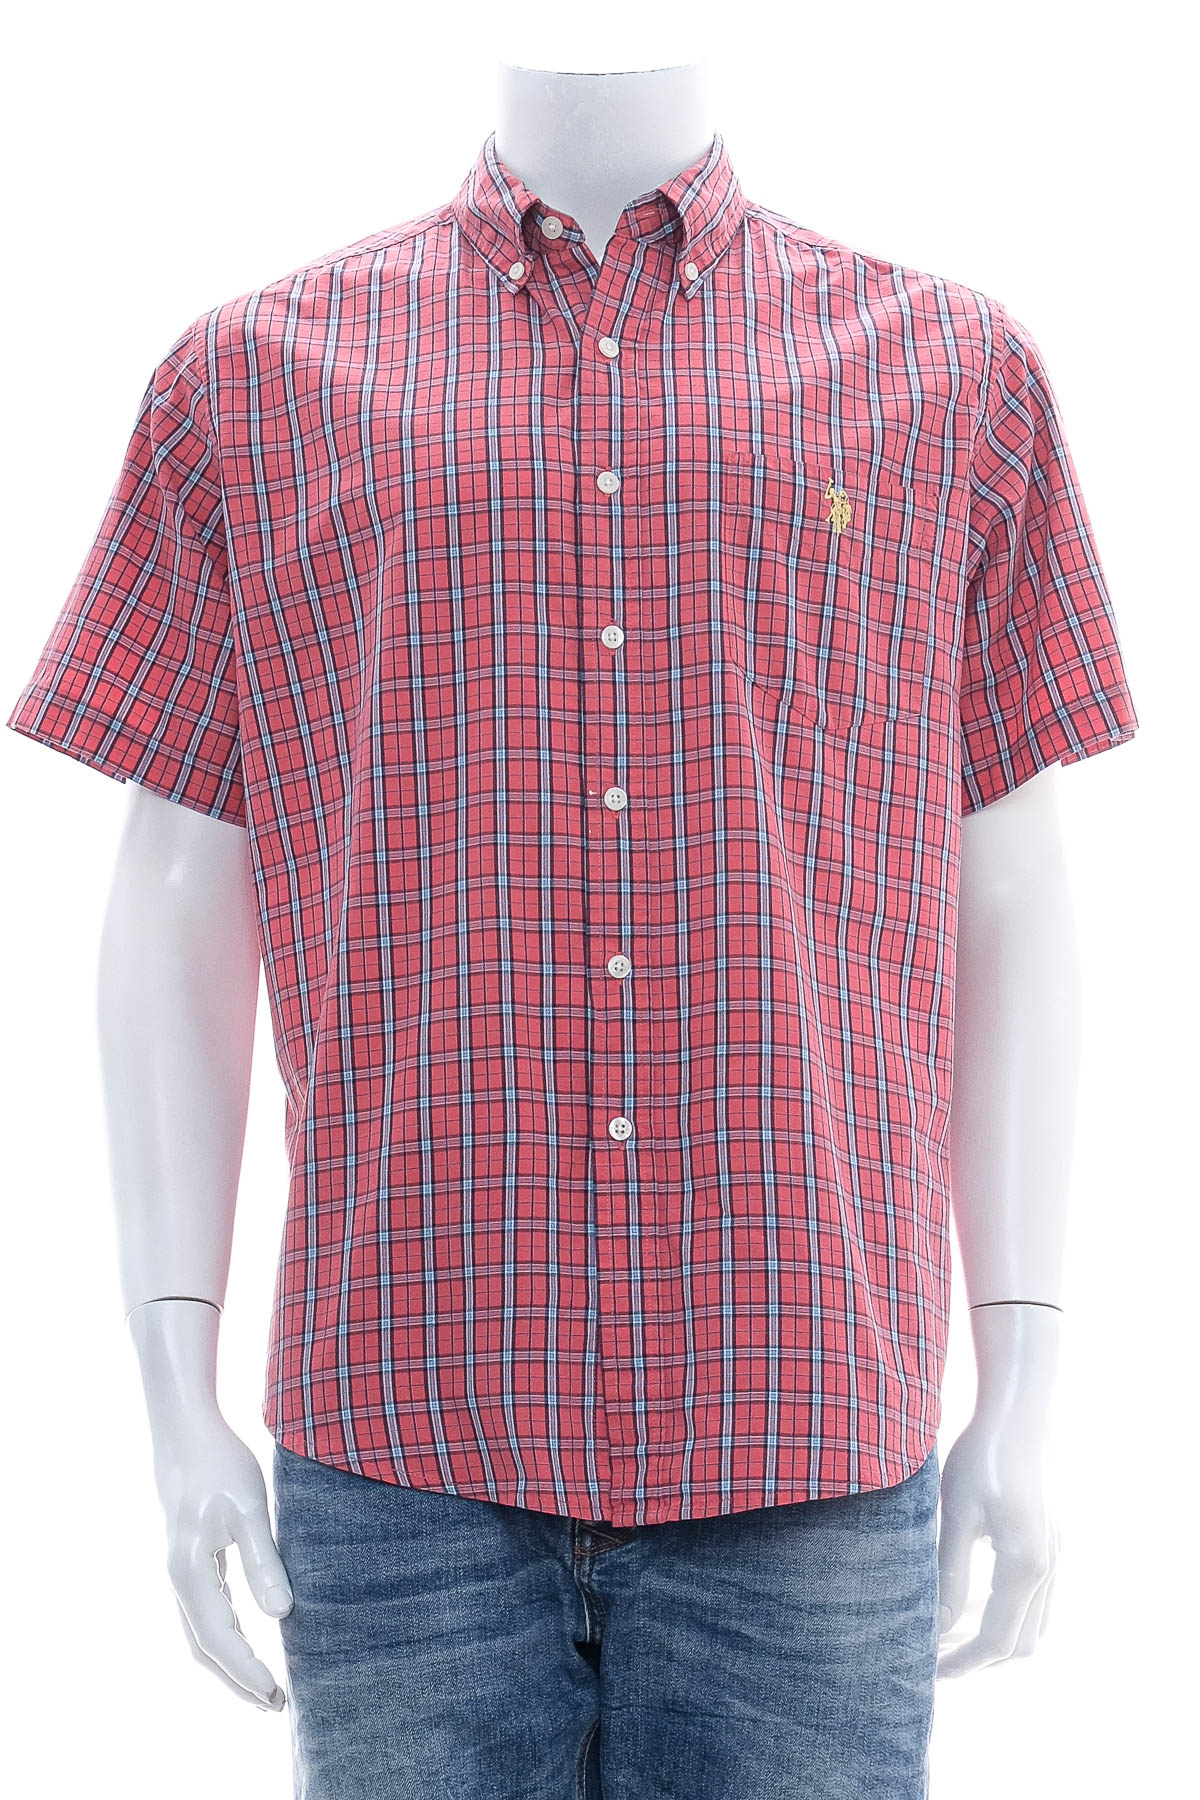 Ανδρικό πουκάμισο - U.S. Polo ASSN. - 0